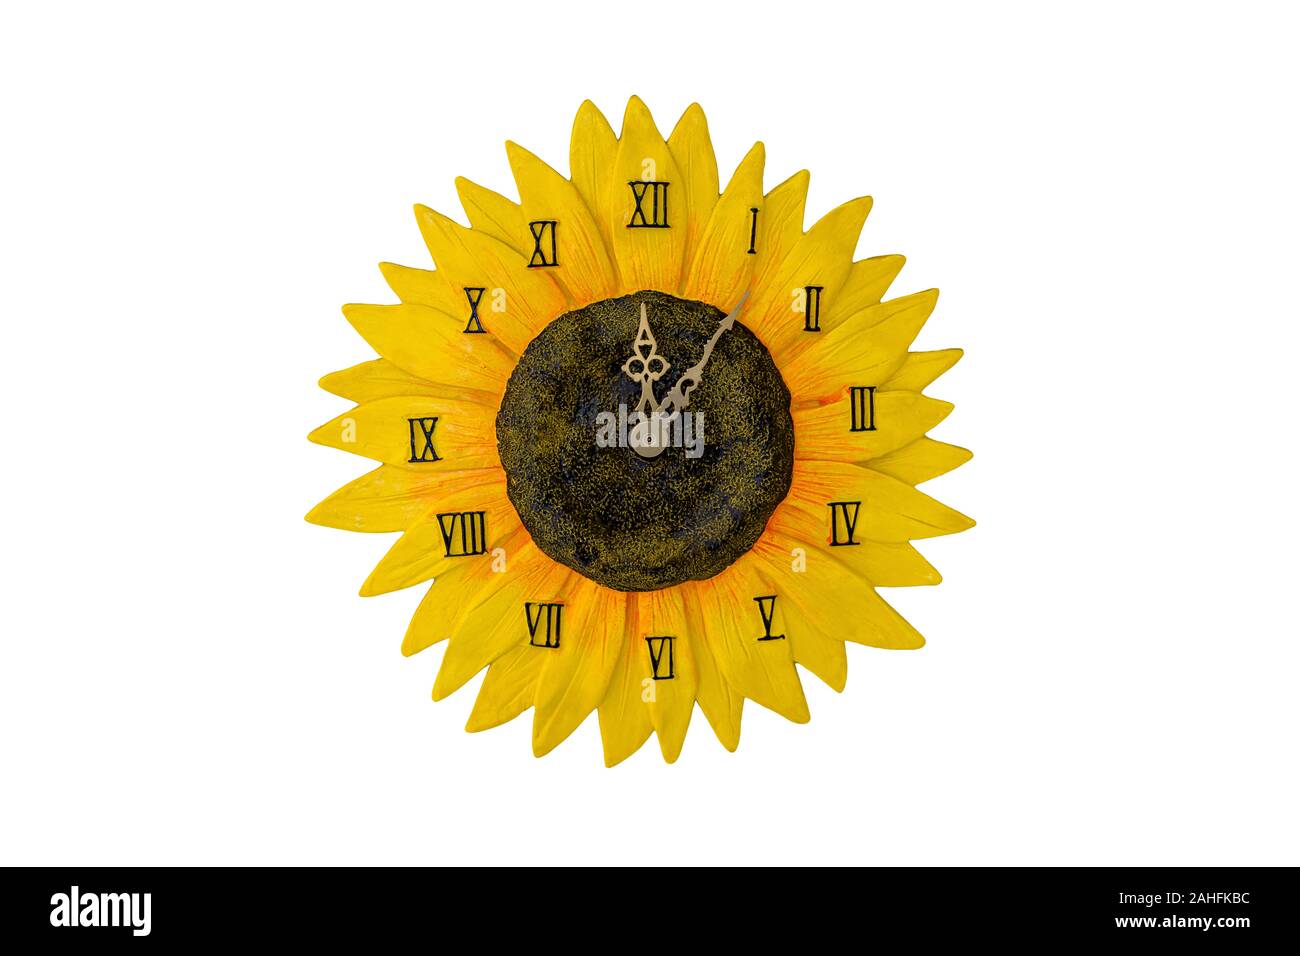 Gelb Sunflower Clock isoliert auf einem weißen Hintergrund. Stockfoto